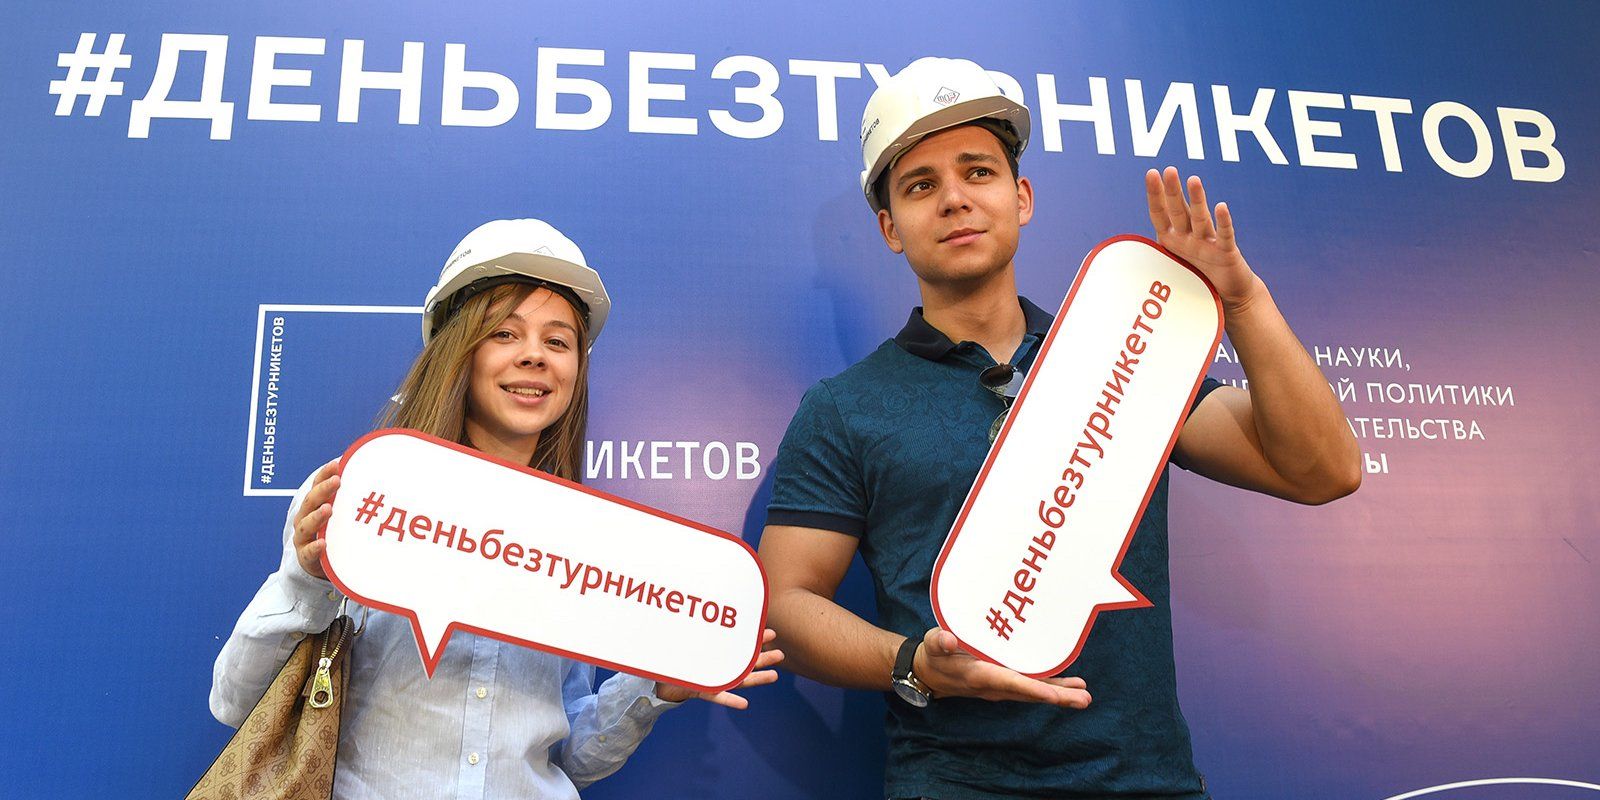 Акция «День без турникетов» пройдет в онлайн-формате. Фото: сайт мэра Москвы